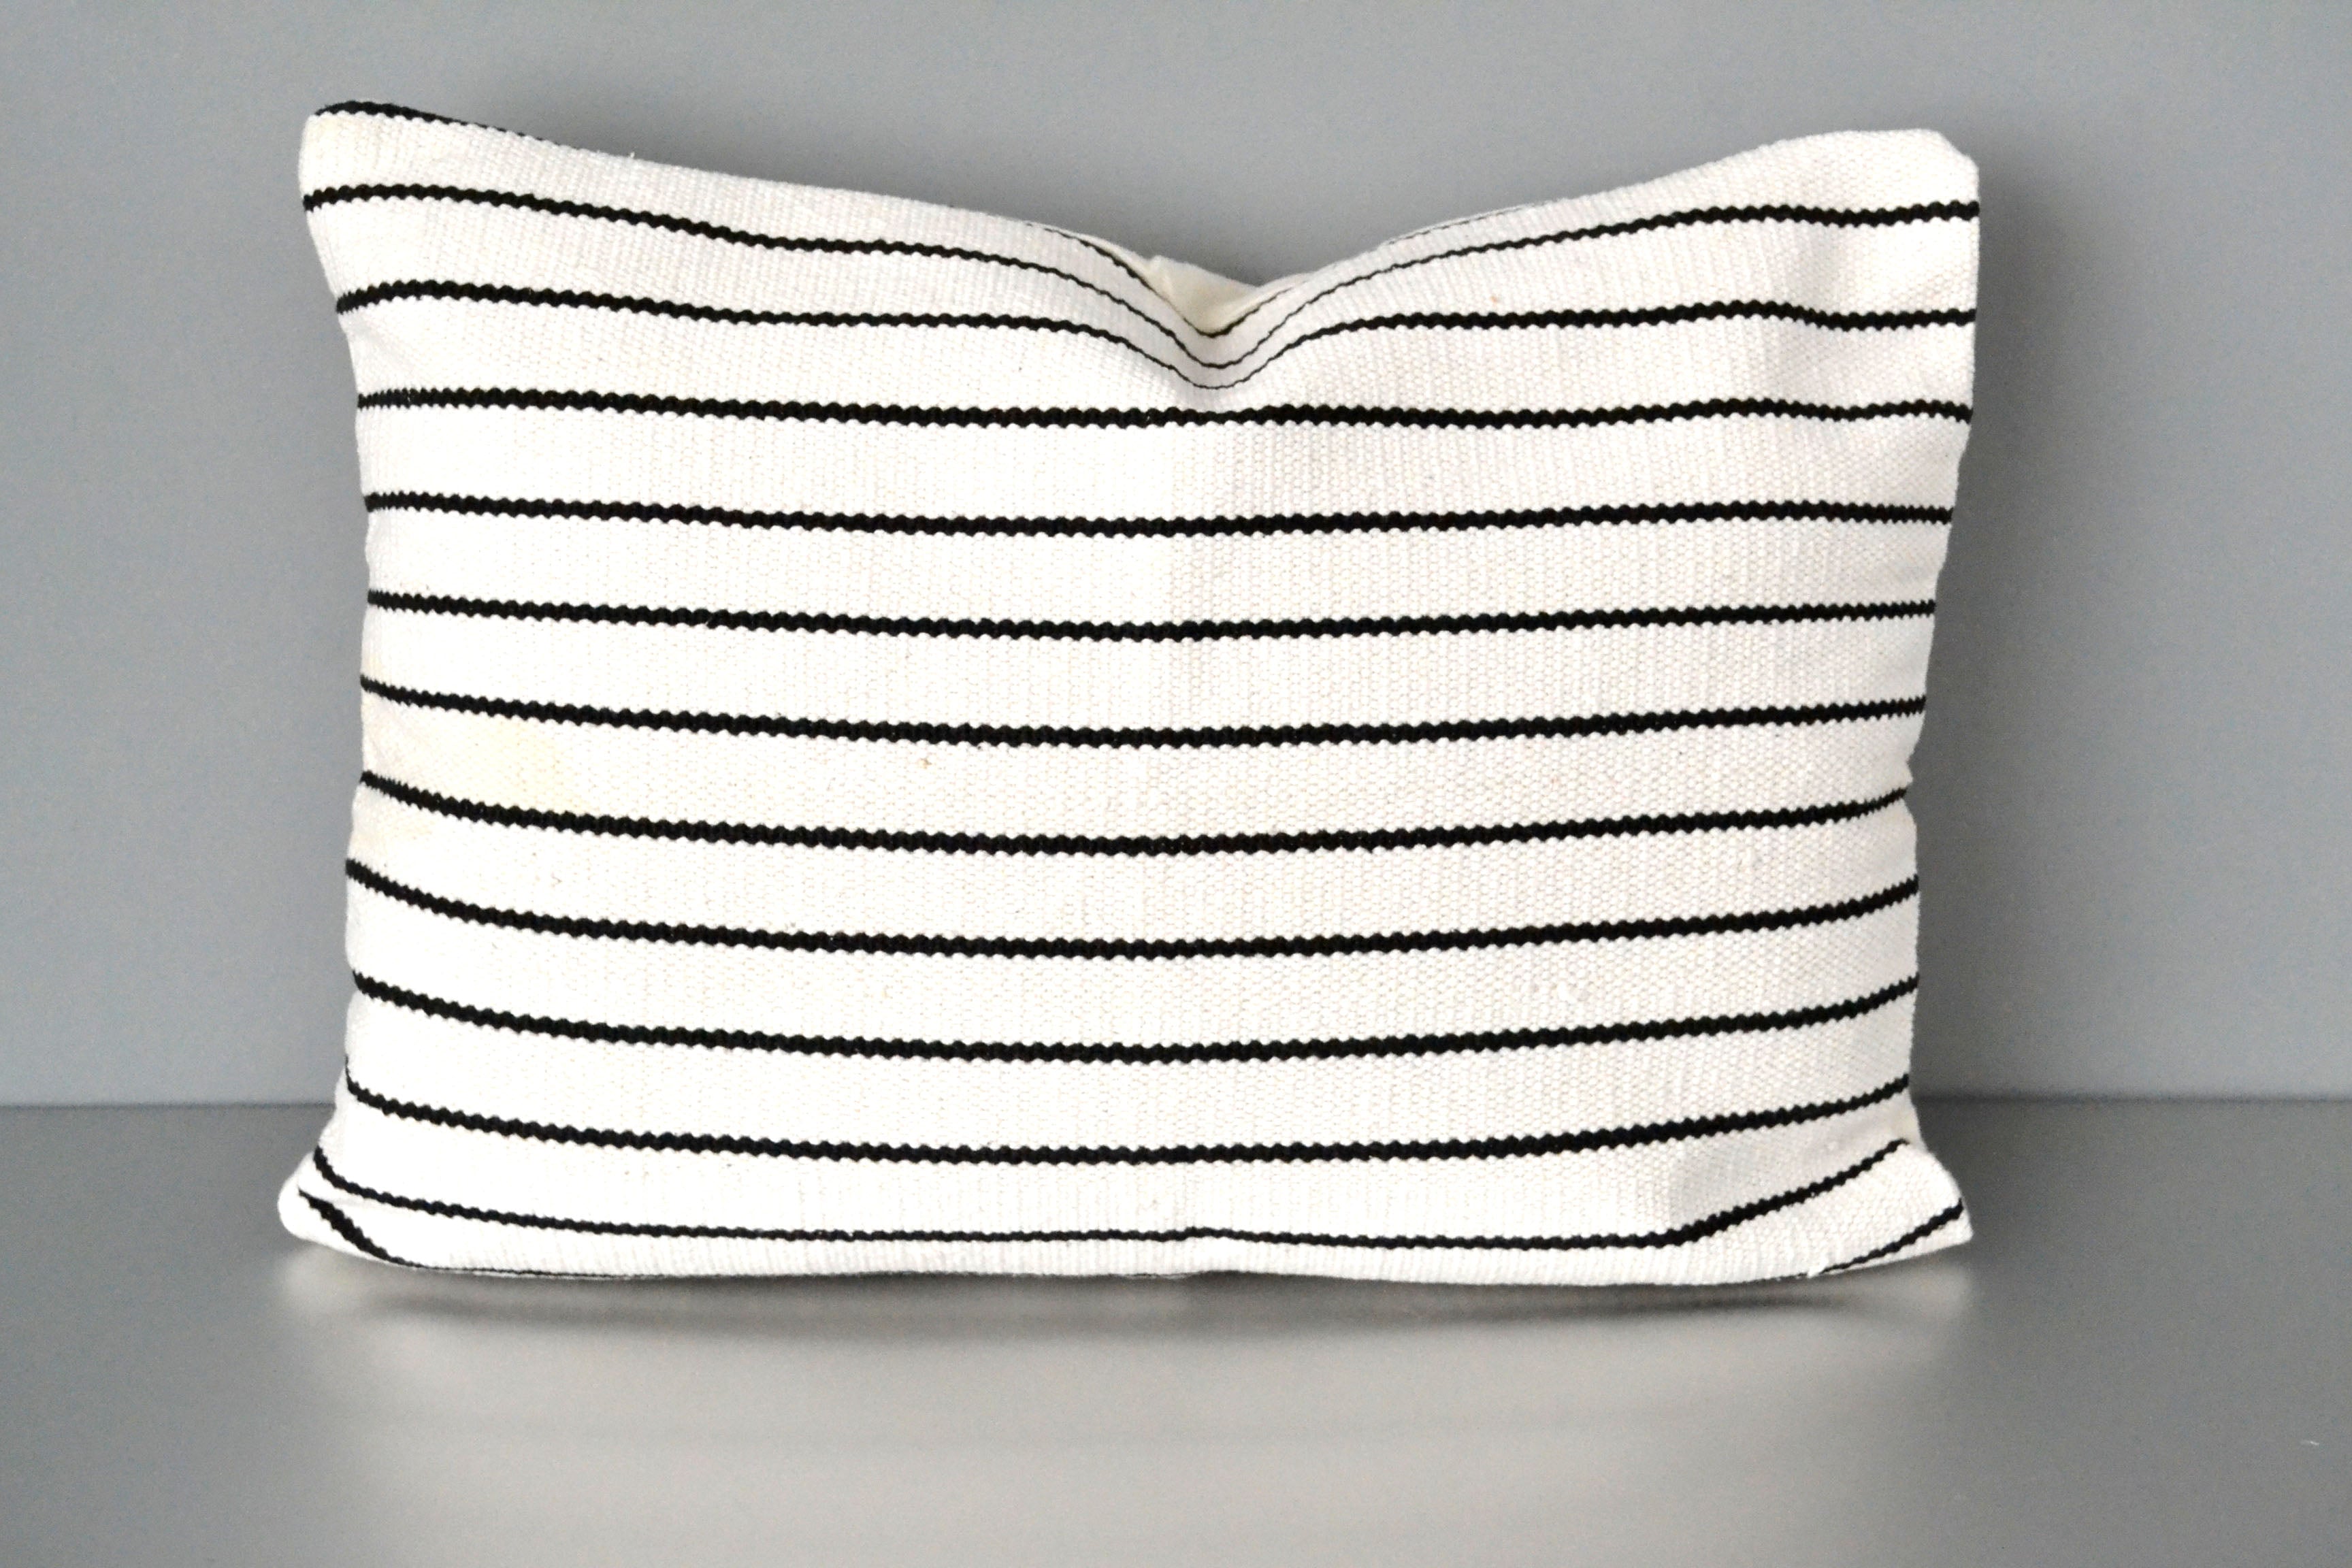 Striped Cotton Lumbar Pillow